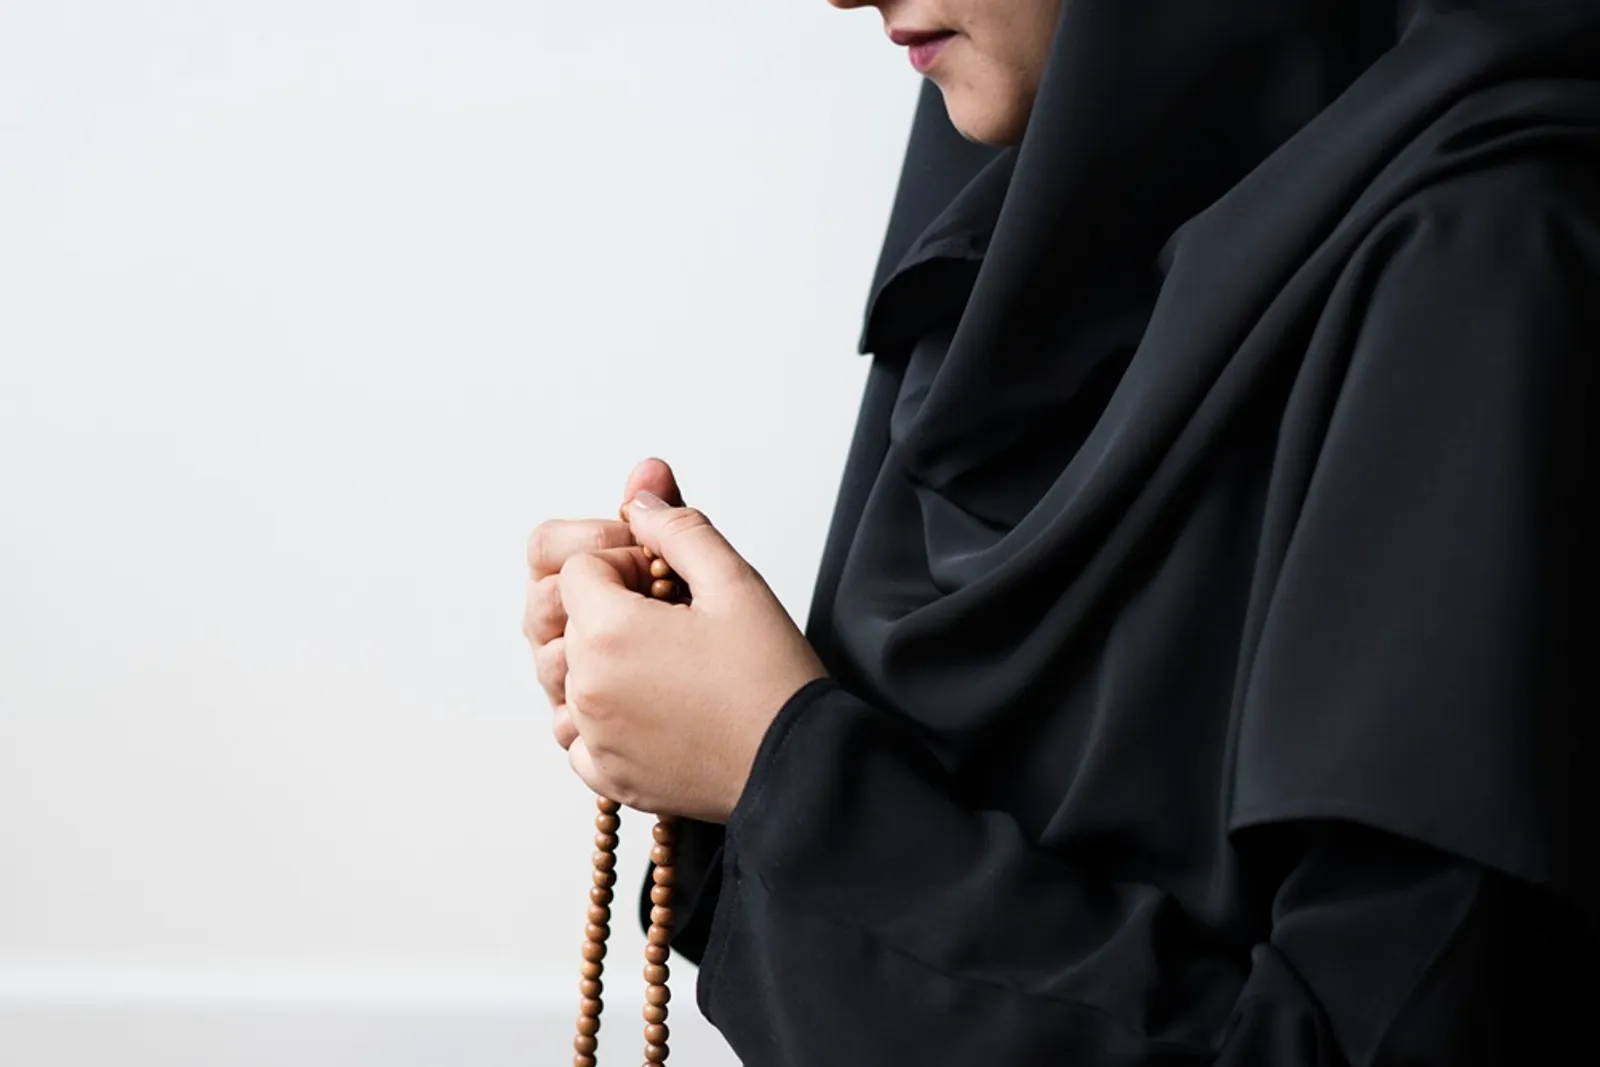 Hukum Istri Marah pada Suami Menurut Islam, Dosa Nggak?